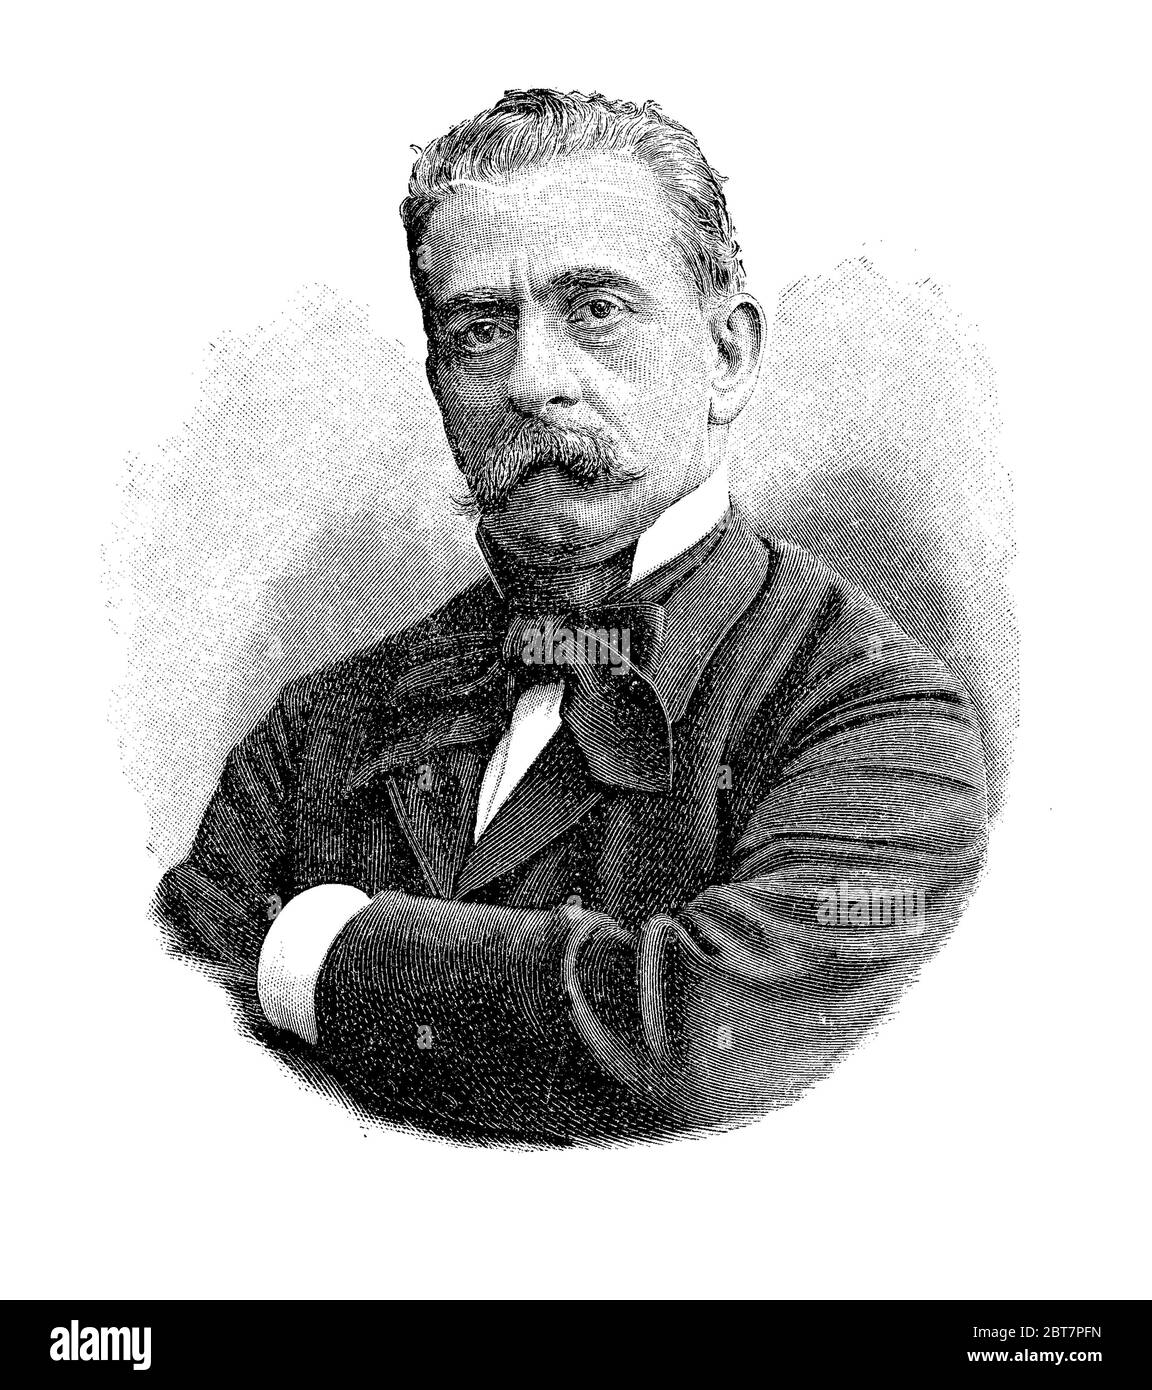 Gravurporträt von Paolo Ferrari (1822 - 1889), italienischer Dramatiker, Autor zahlreicher erfolgreicher Werke, Komödien und Dramen Stockfoto